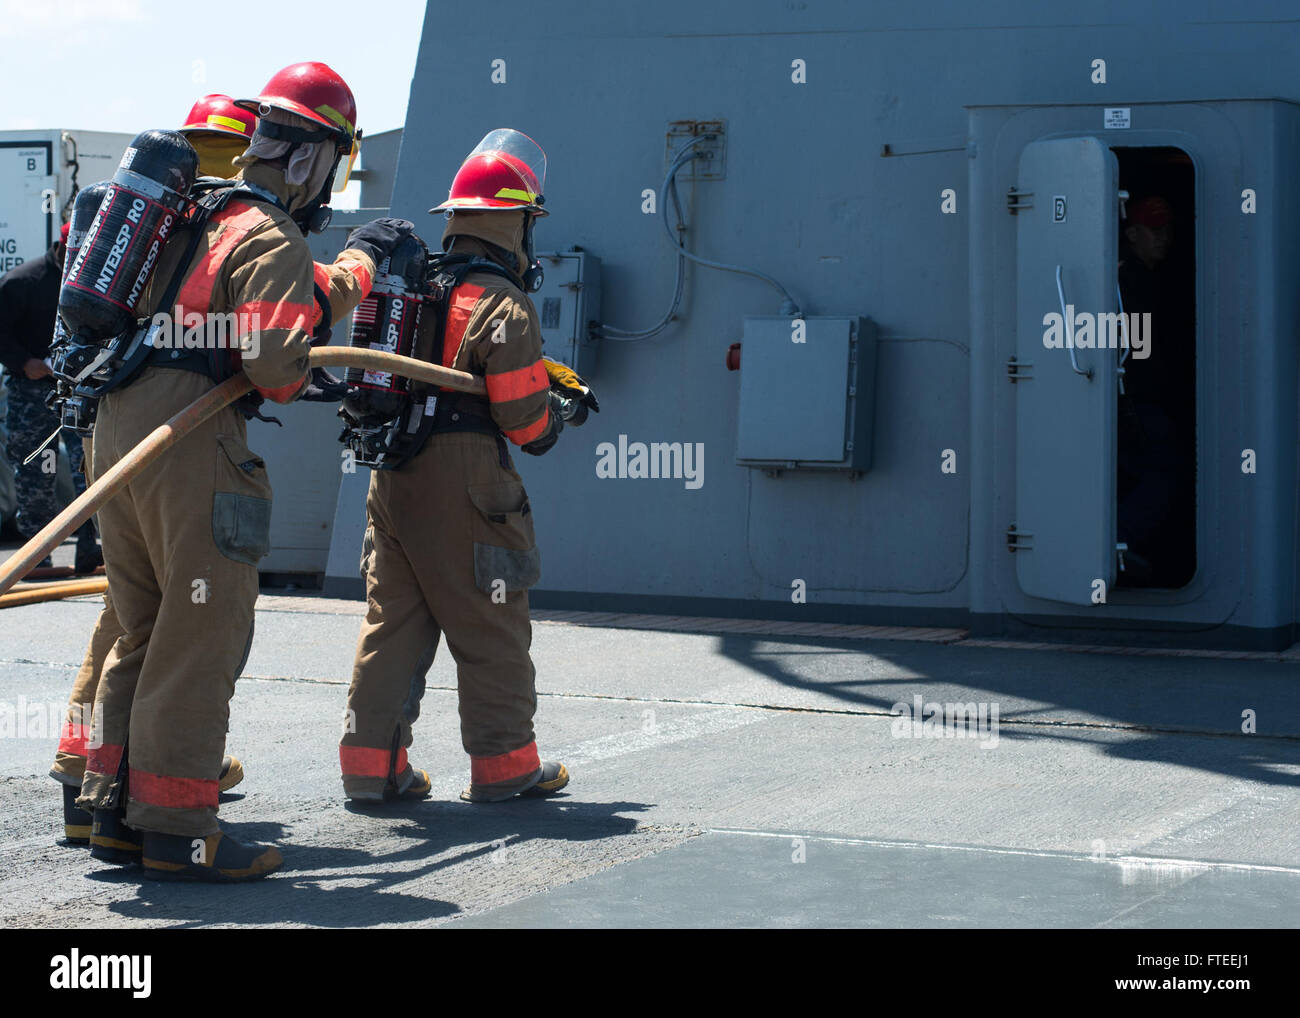 140531-N-EZ054-076 Atlantik (31. Mai 2014) Segler USS Mount Whitney (LCC20) befestigt Ansatz die Gegend, wo ein Feuer während eine Schadensbegrenzung Trainingsszenario an Bord der Mount Whitney gemeldet wurde. Mount Whitney, Gridley in Gaeta, Italien, ist den USA 6. Flotte Flaggschiff und arbeitet mit einer kombinierten Mannschaft von US-Segler und Military Sealift Command (MSC) Zivildienst Seeleute. (Foto: U.S. Navy Mass Communication Specialist 3. Klasse Luis R. Chavez Jr/freigegeben) Stockfoto